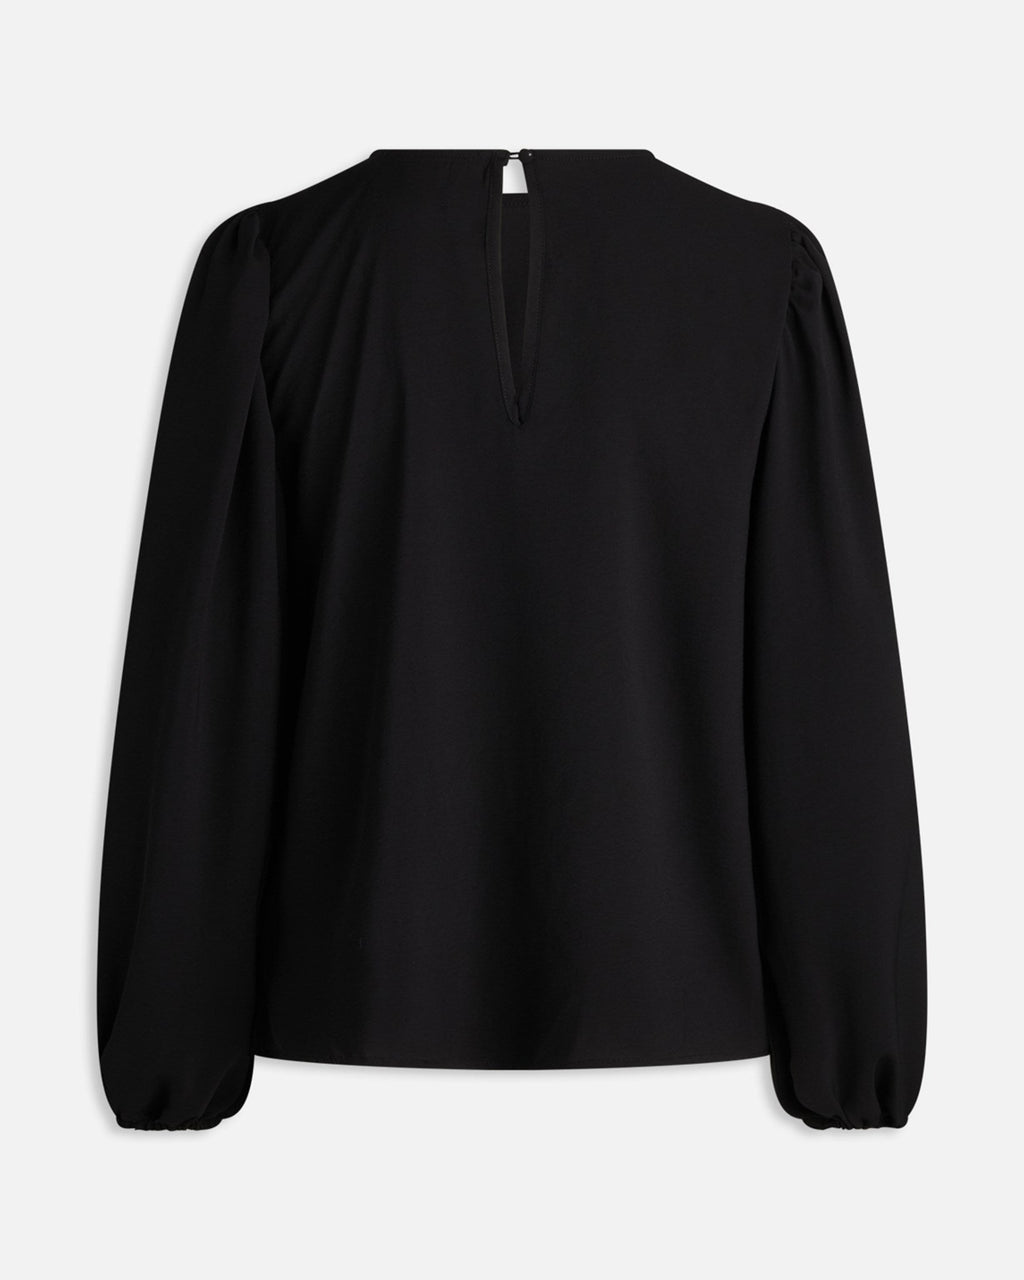 Vella blouse met lange mouwen - zwart